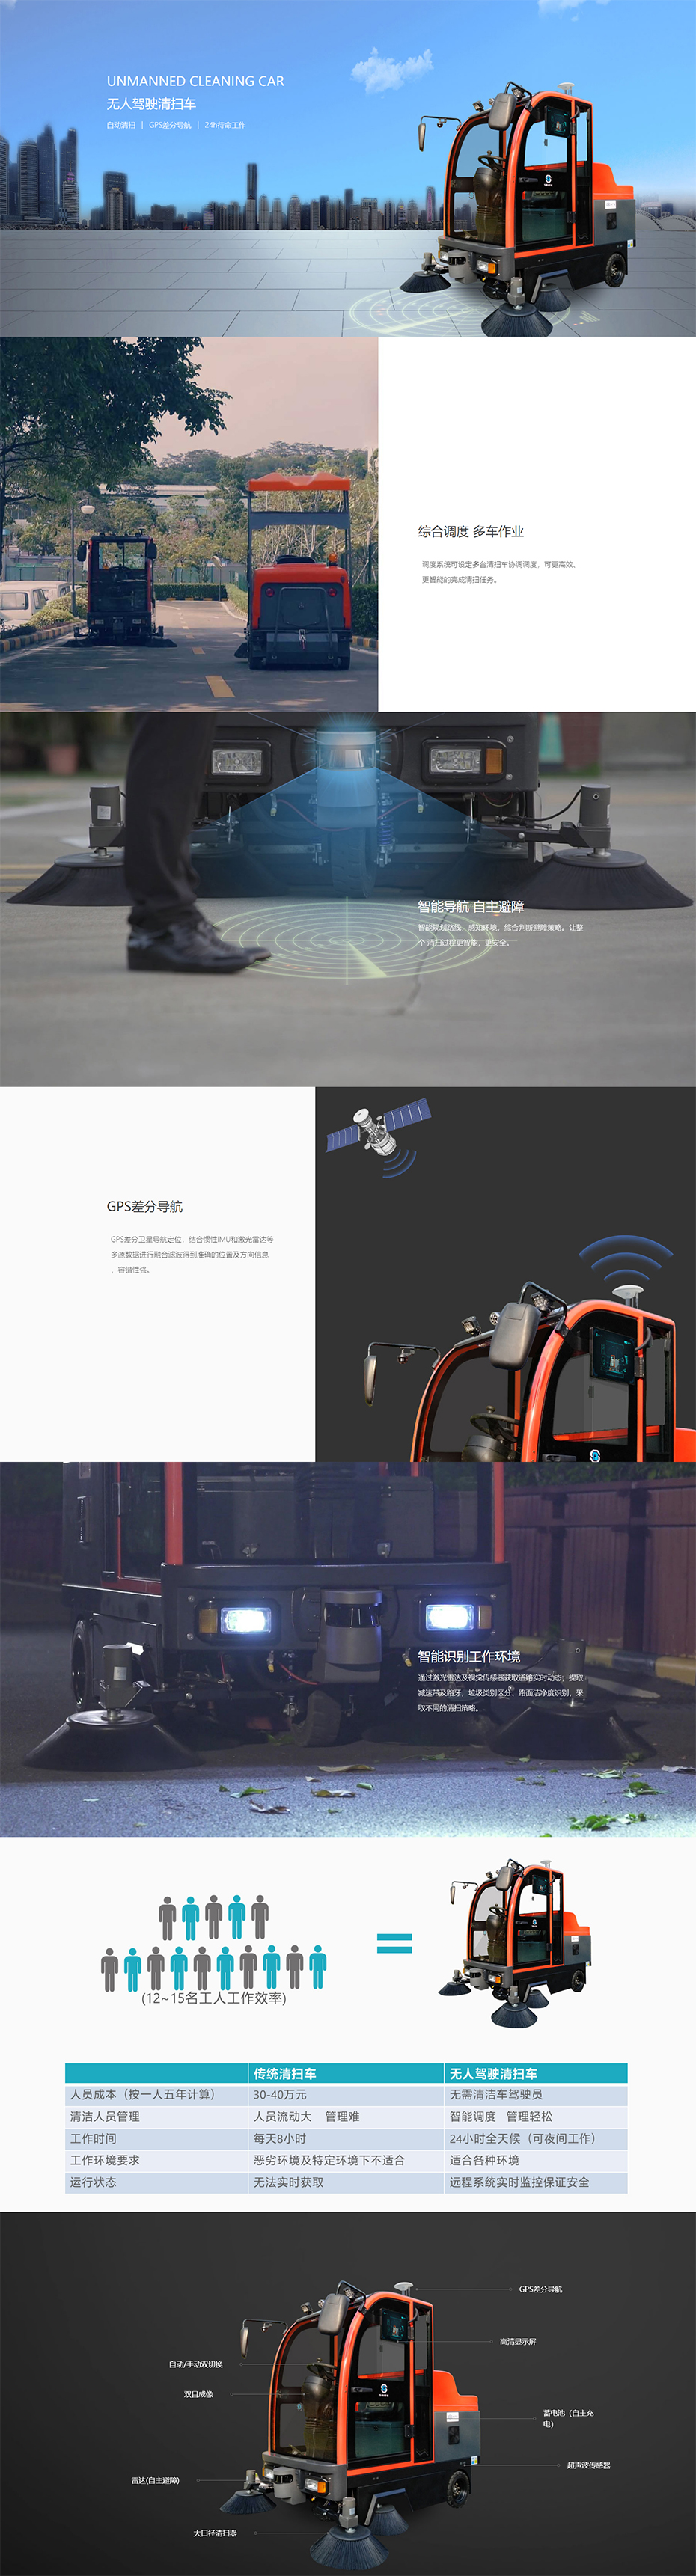 无人驾驶清扫车-广州赛特智能科技有限公司.jpg